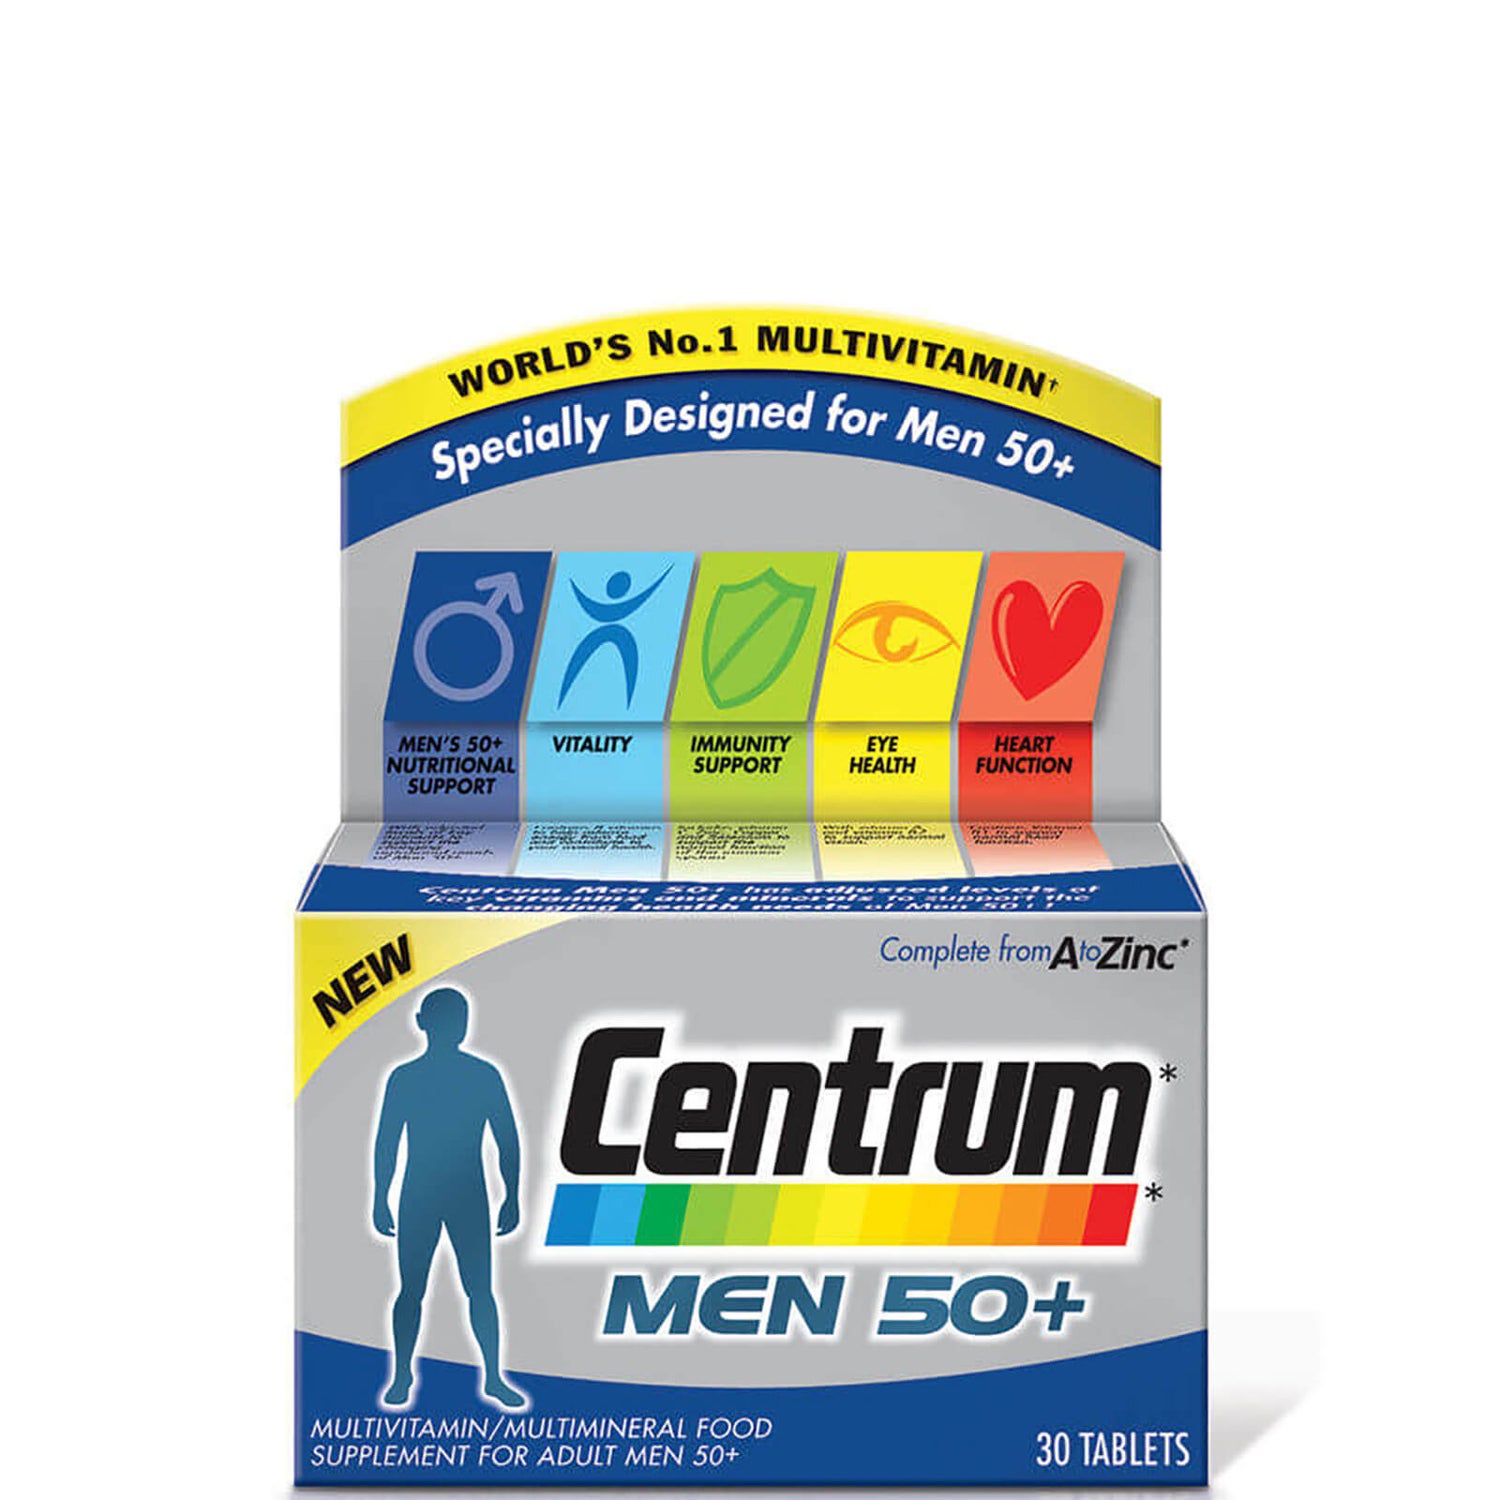 Мужские поливитамины Centrum Men 50 Plus Multivitamin Tablets - (30 таблеток)